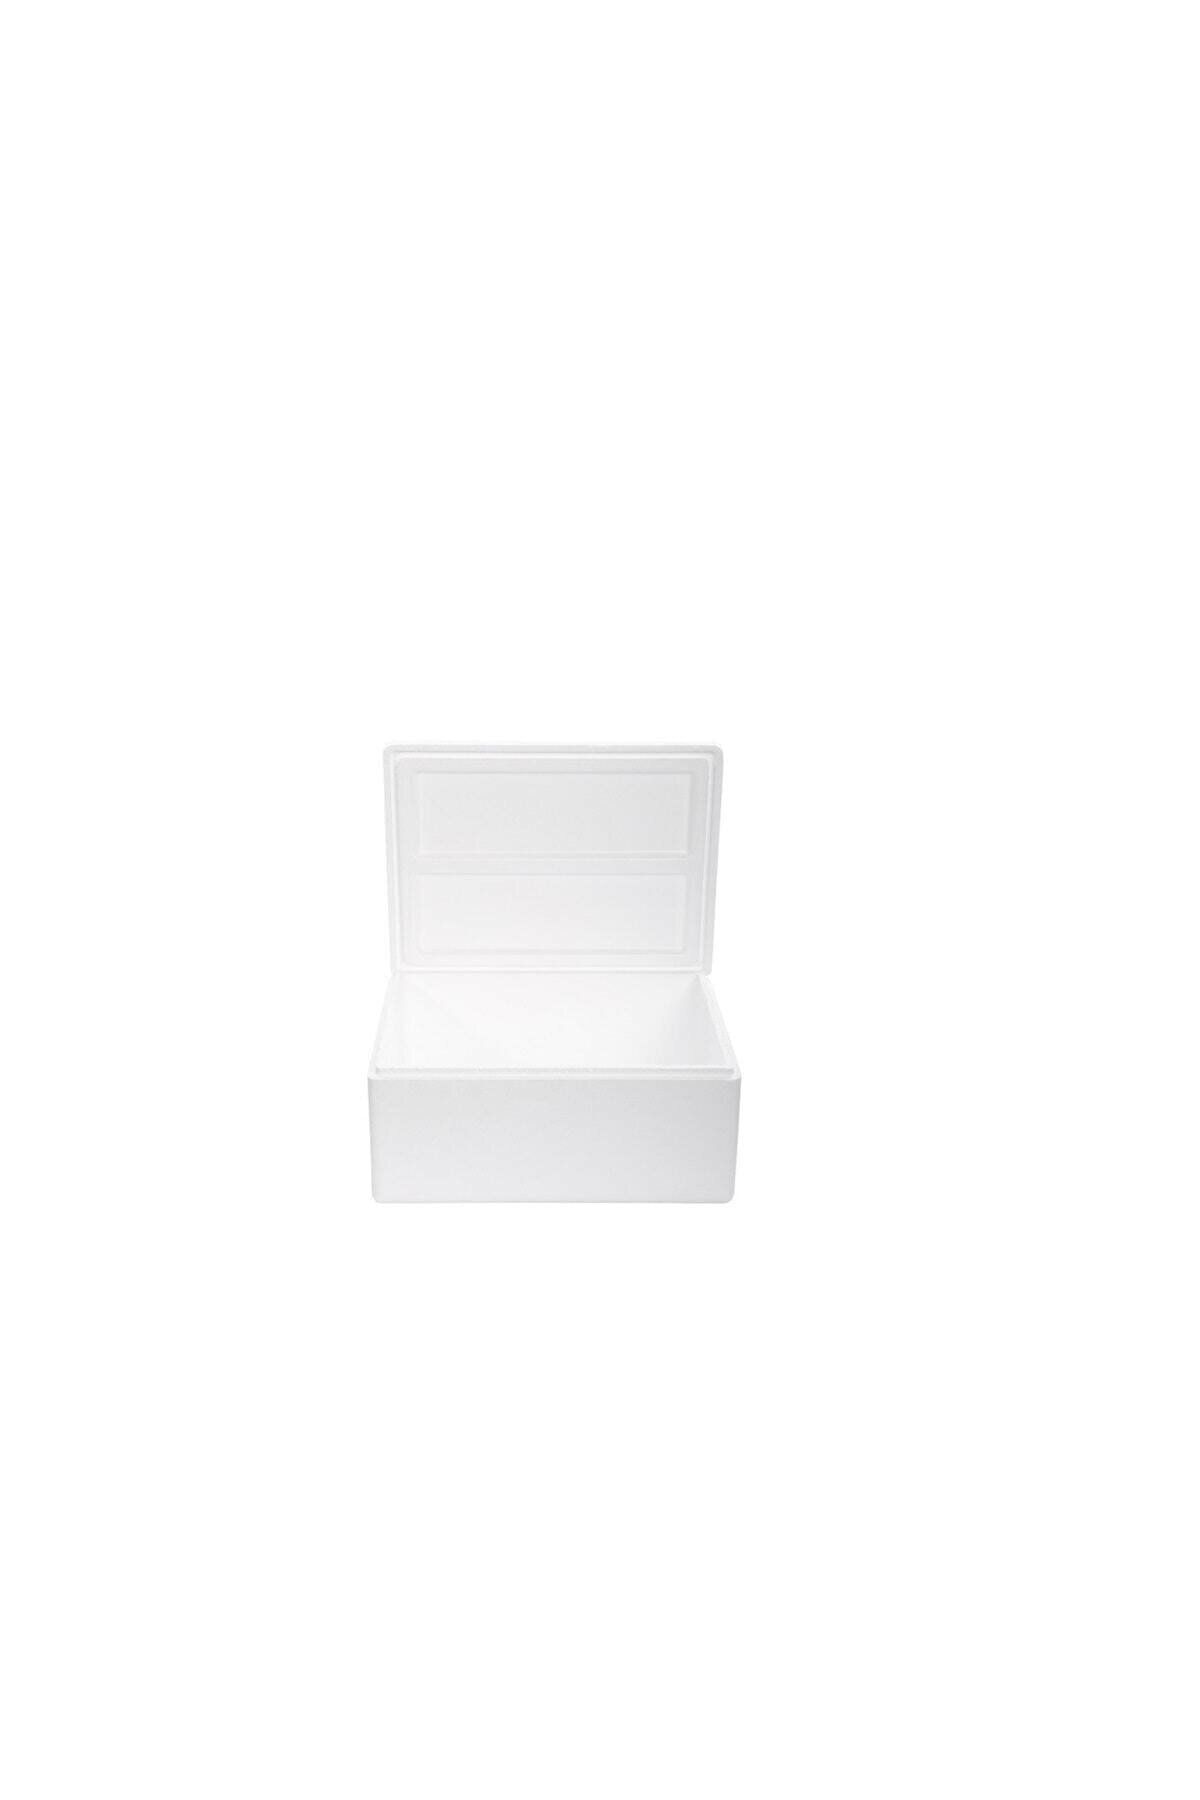 Nefes Sağlık Beyaz Strafor Köpük Kutu (50x40x25,5) Cm 15 Kg - B-3 (1 Adet)